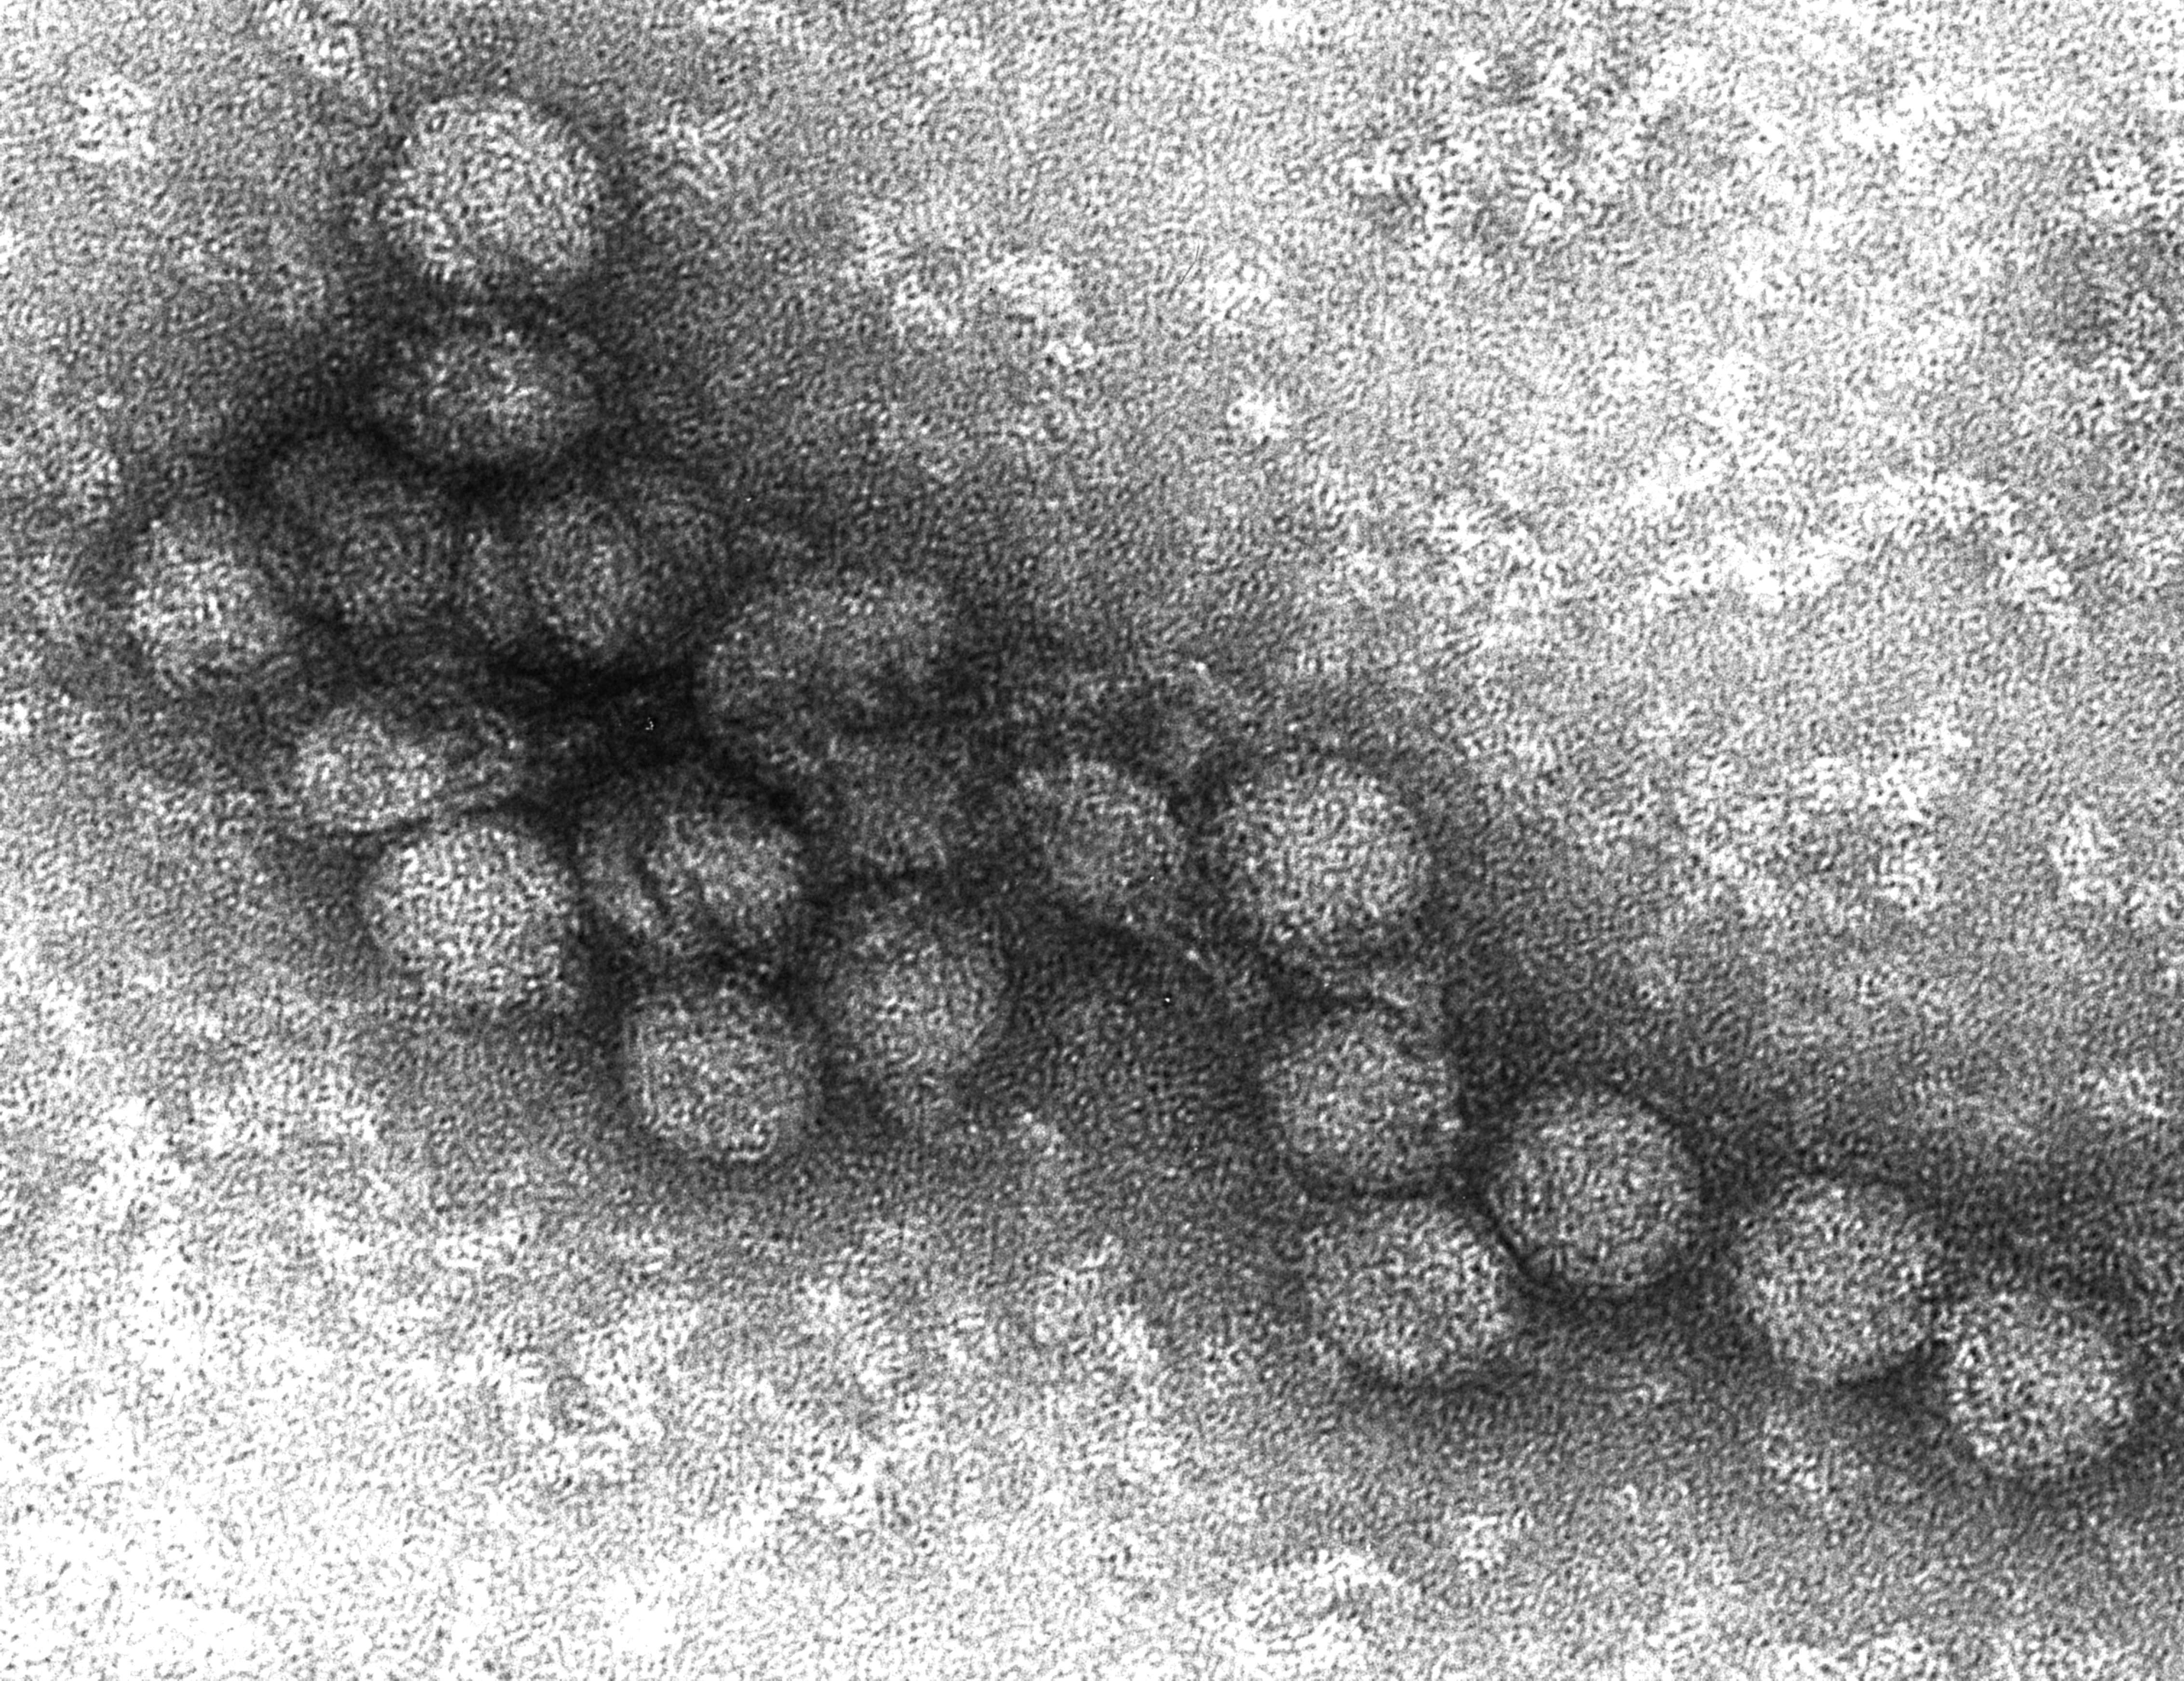 Nyugat-nílusi vírus elektronmikroszkópos felvétele